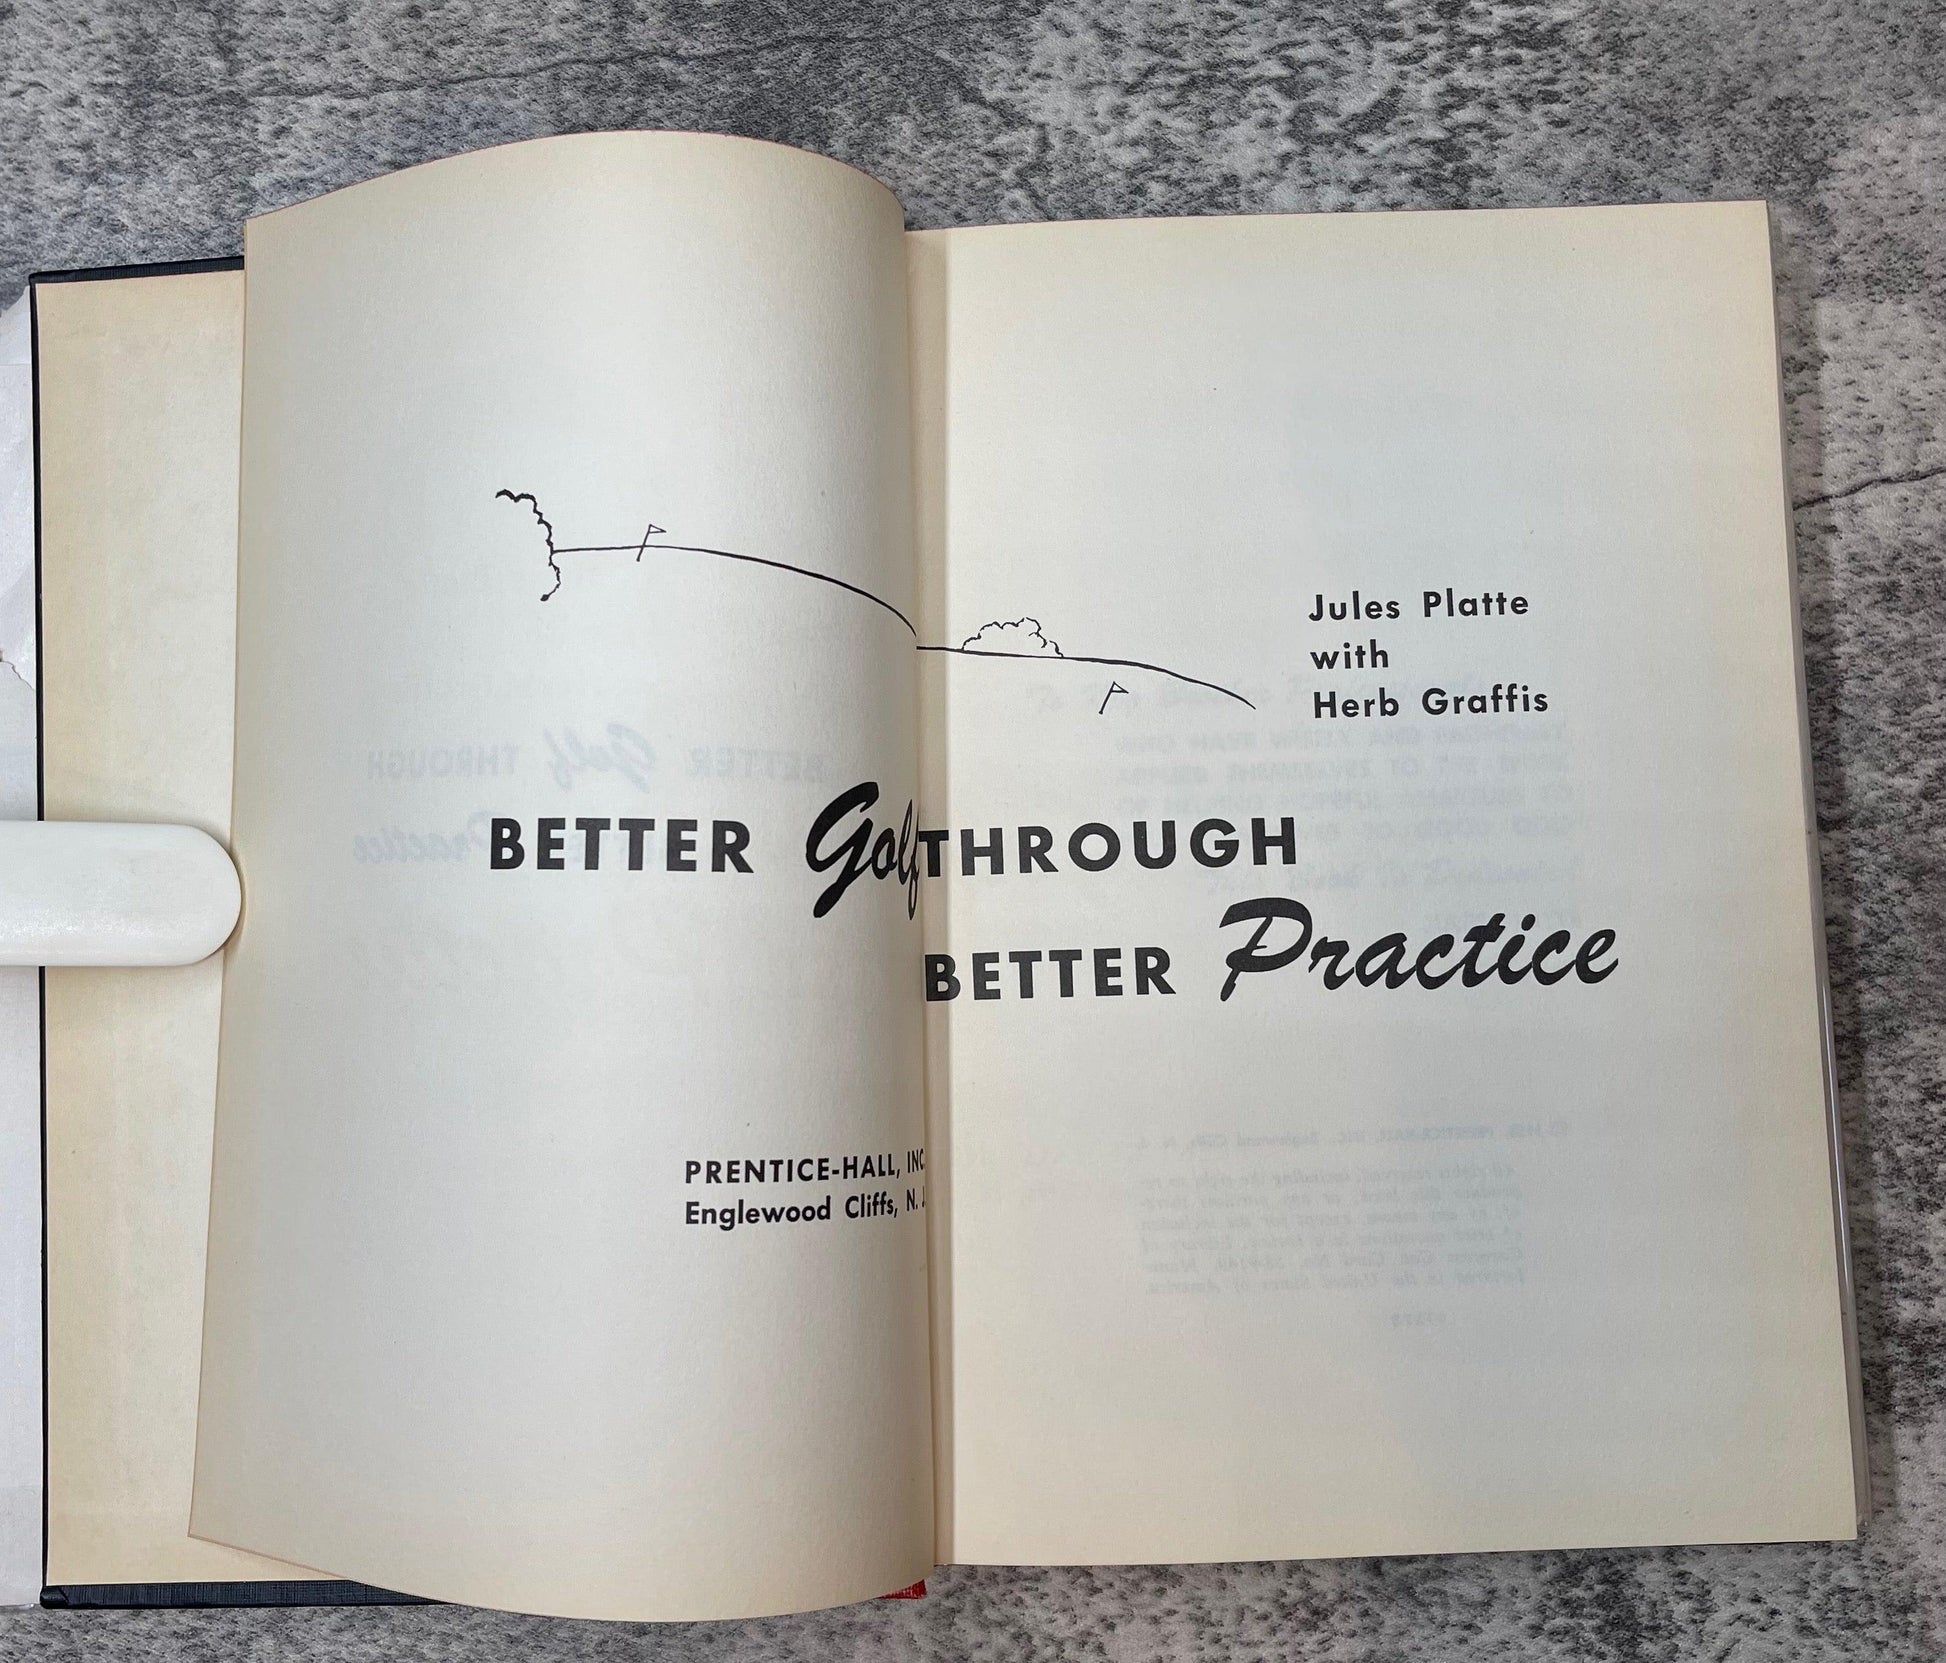 Better Golf Through Better Practice / 1958 - Precious Cache